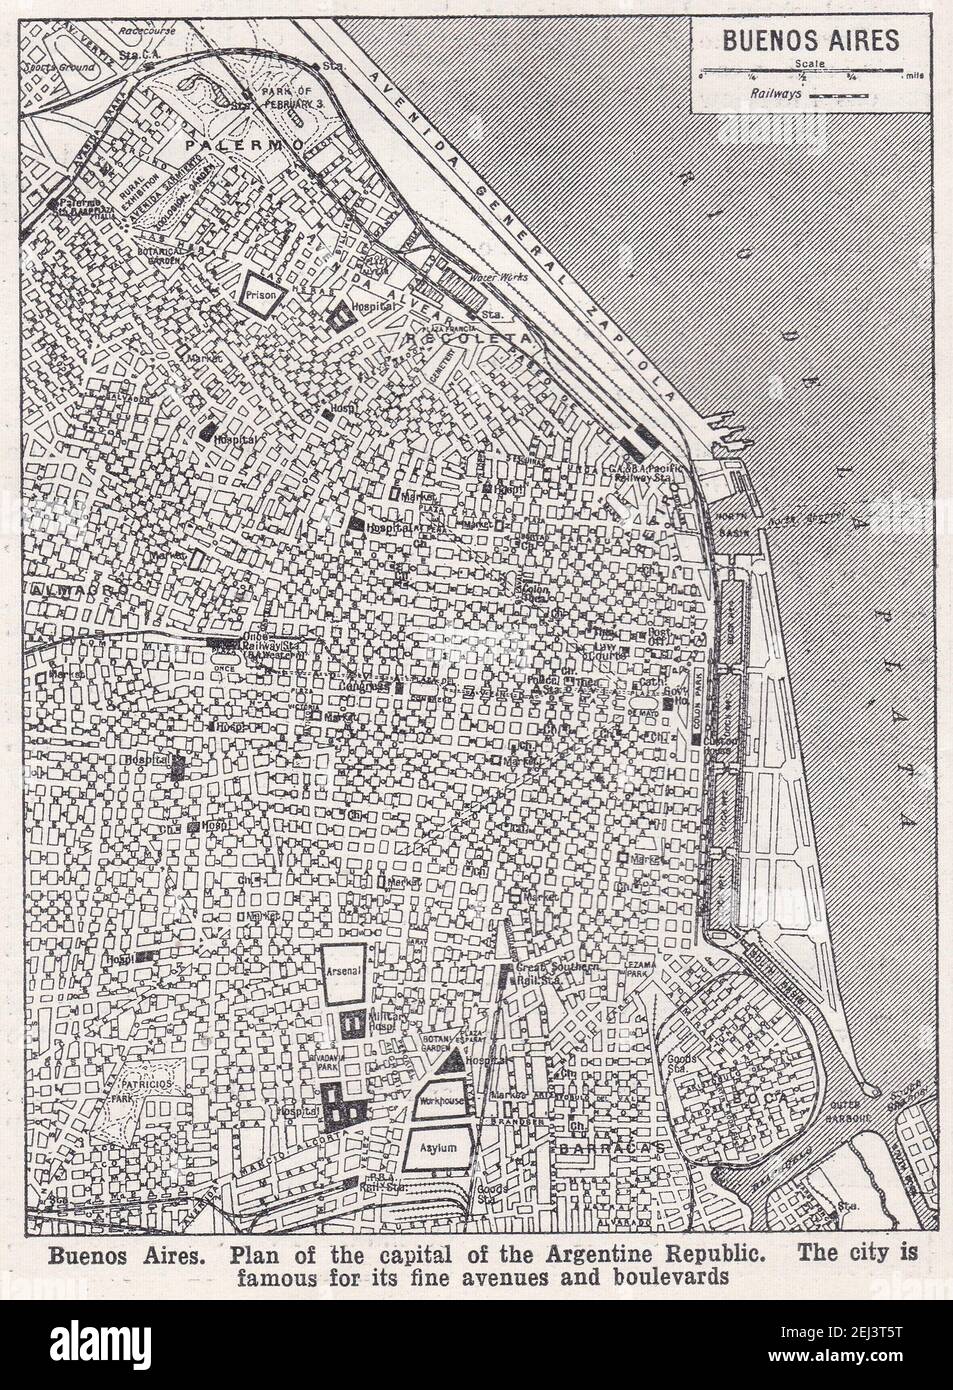 Vintage Karte von Buenos Aires - Plan der Hauptstadt der Argentinischen Republik 1900s. Stockfoto